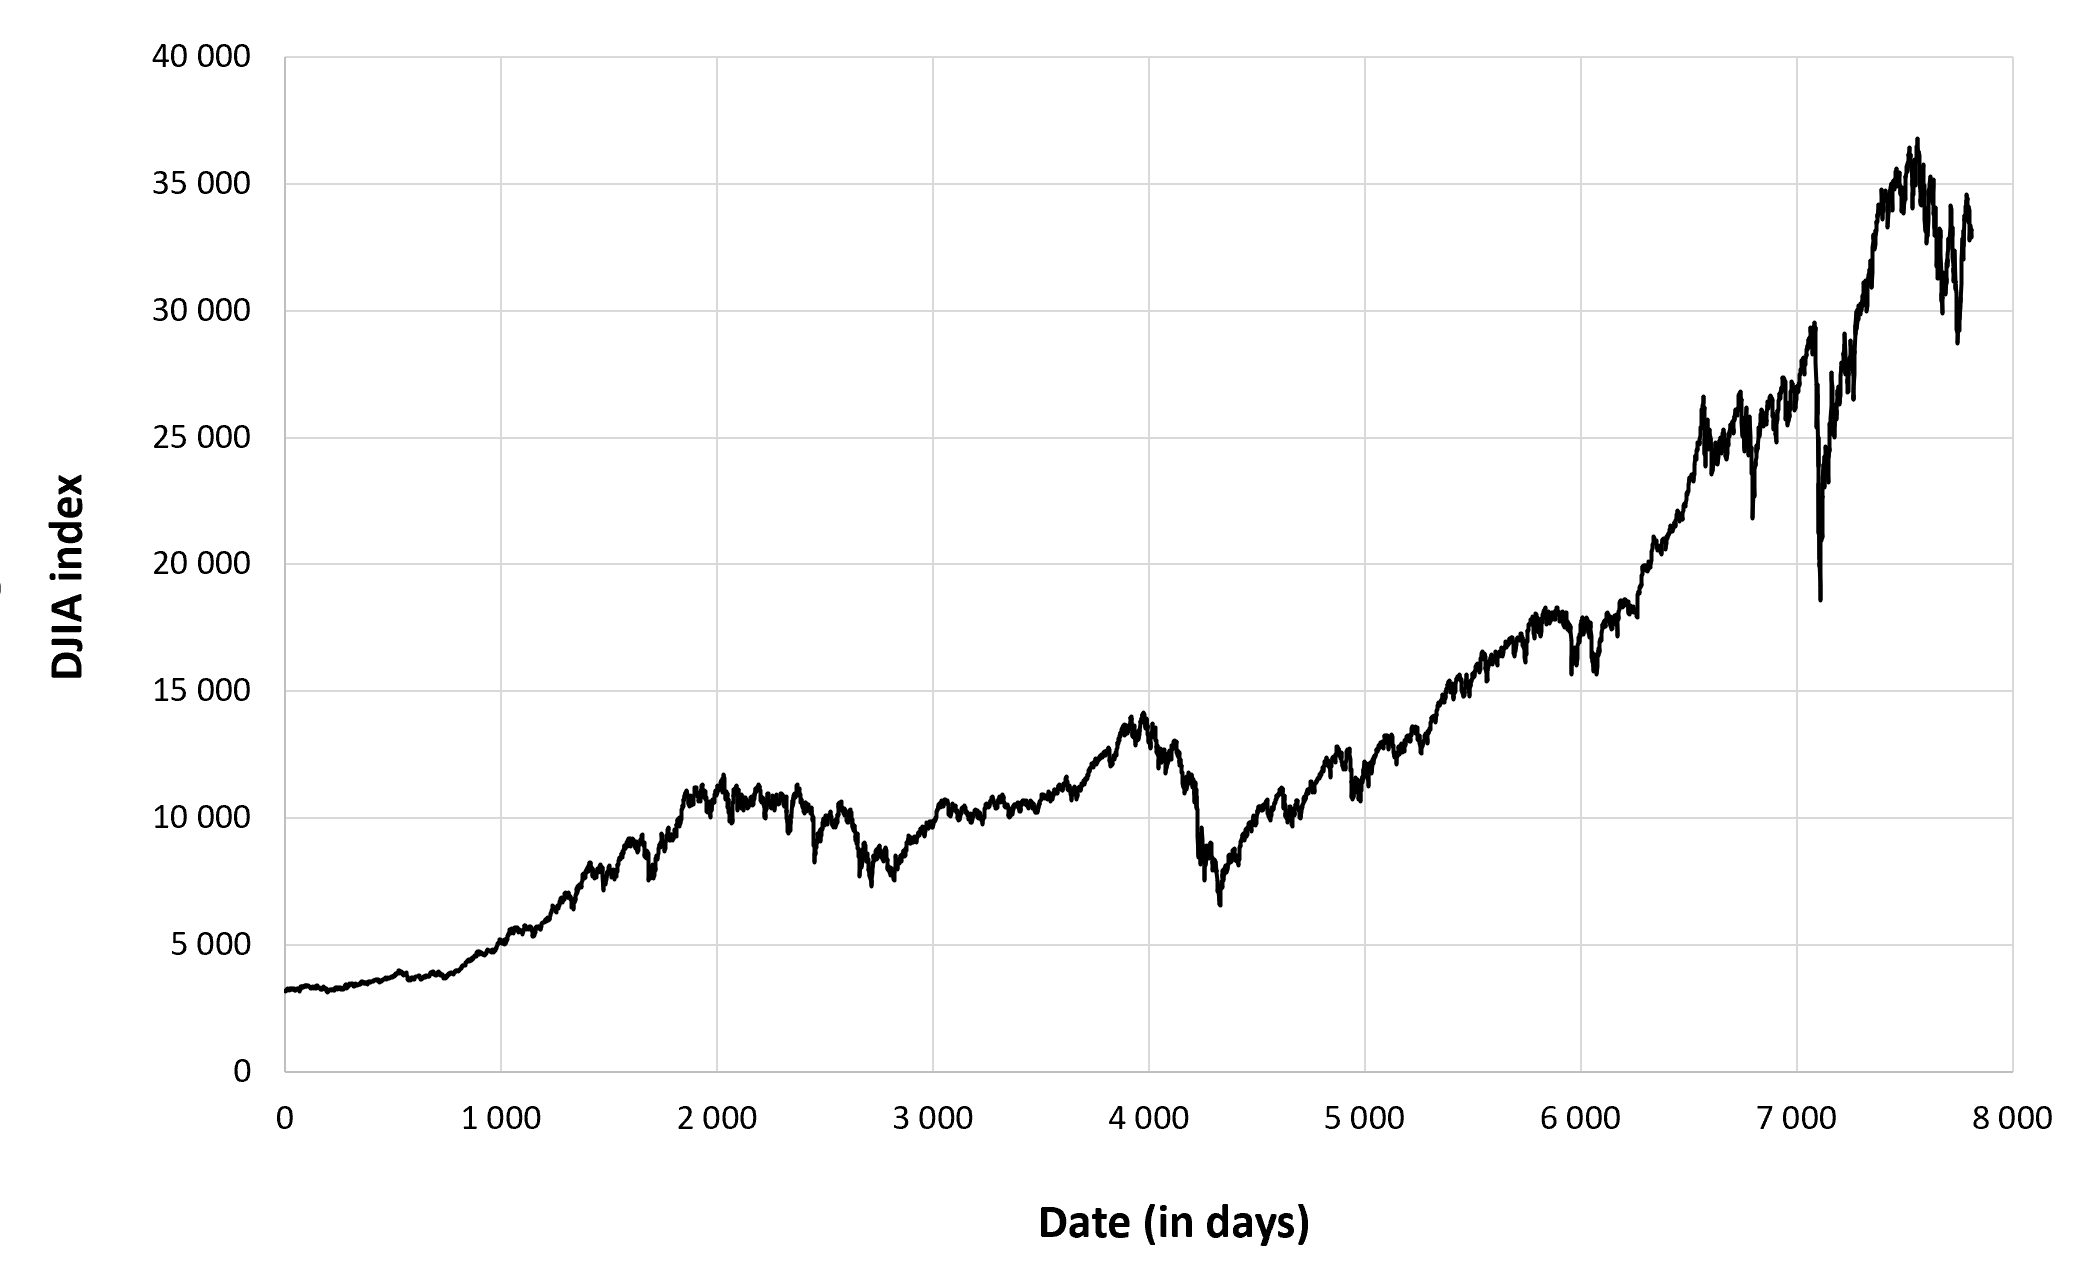 Evolution of the Dow Jones index